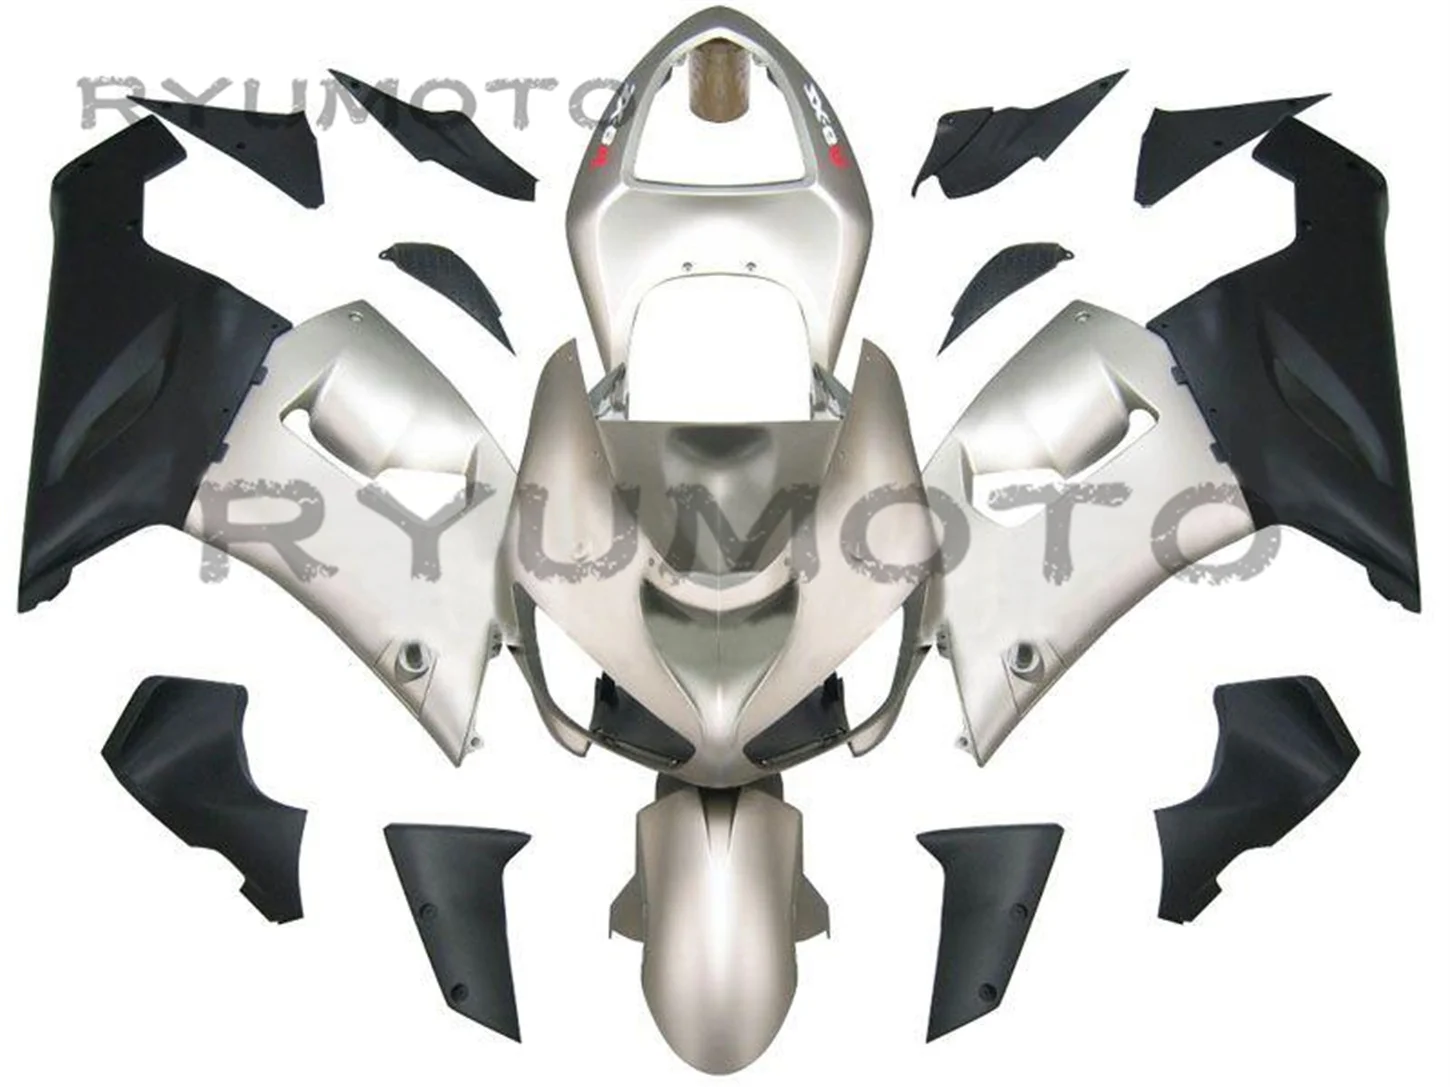 

Новый комплект обтекателей для цельного мотоцикла ABS, подходит для Kawasaki Ninja ZX-6R ZX6R 636 2005 2006 05 06 05-06, обтекатель корпуса